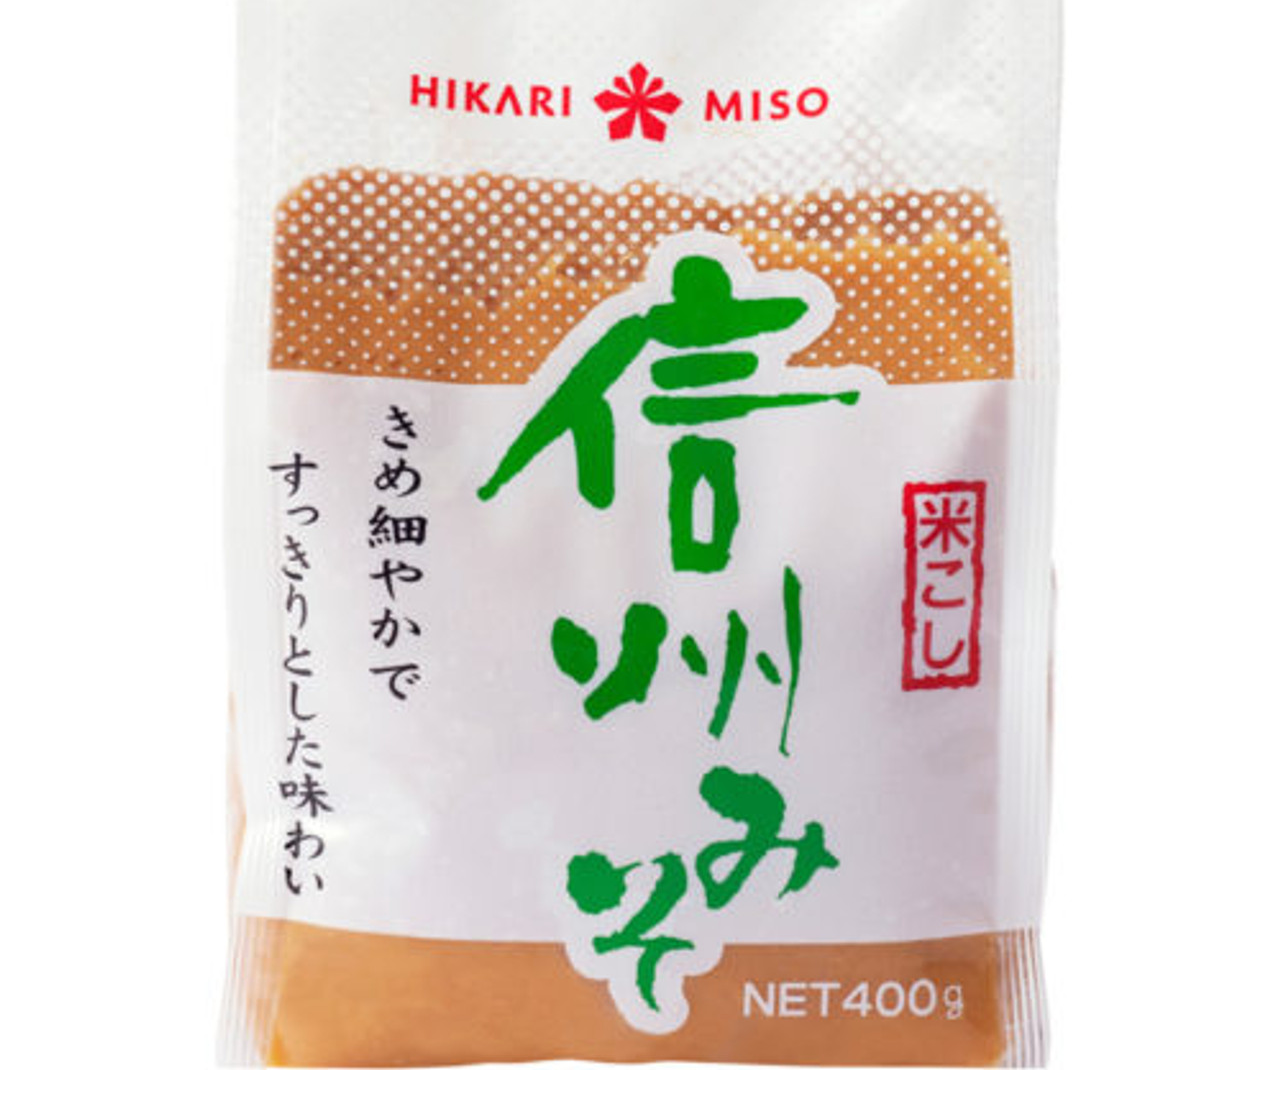 Hikari Shinshu shiro miso paste